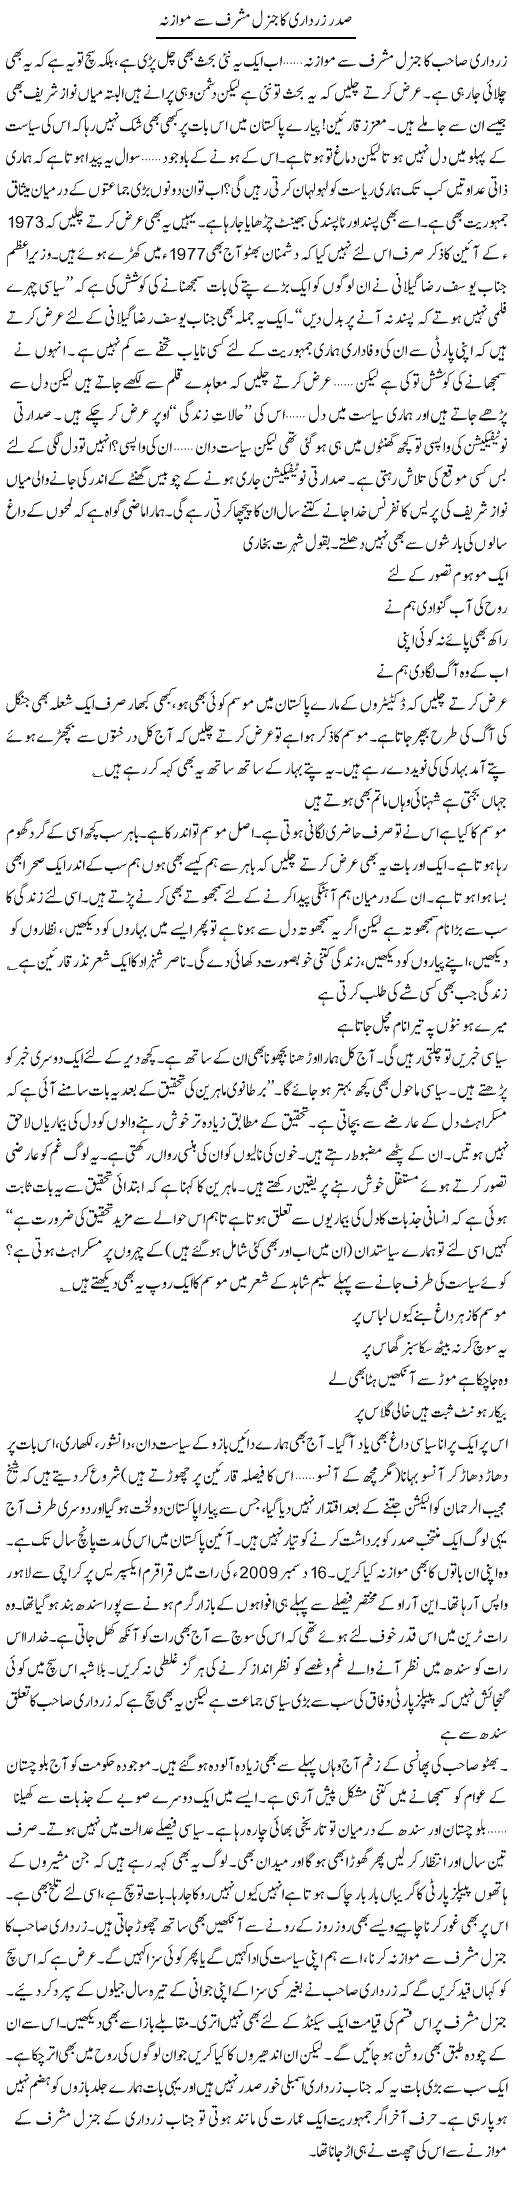 Zardari Mushraf muazna Express Column Ijaz Hafiz 24 Feb 2010